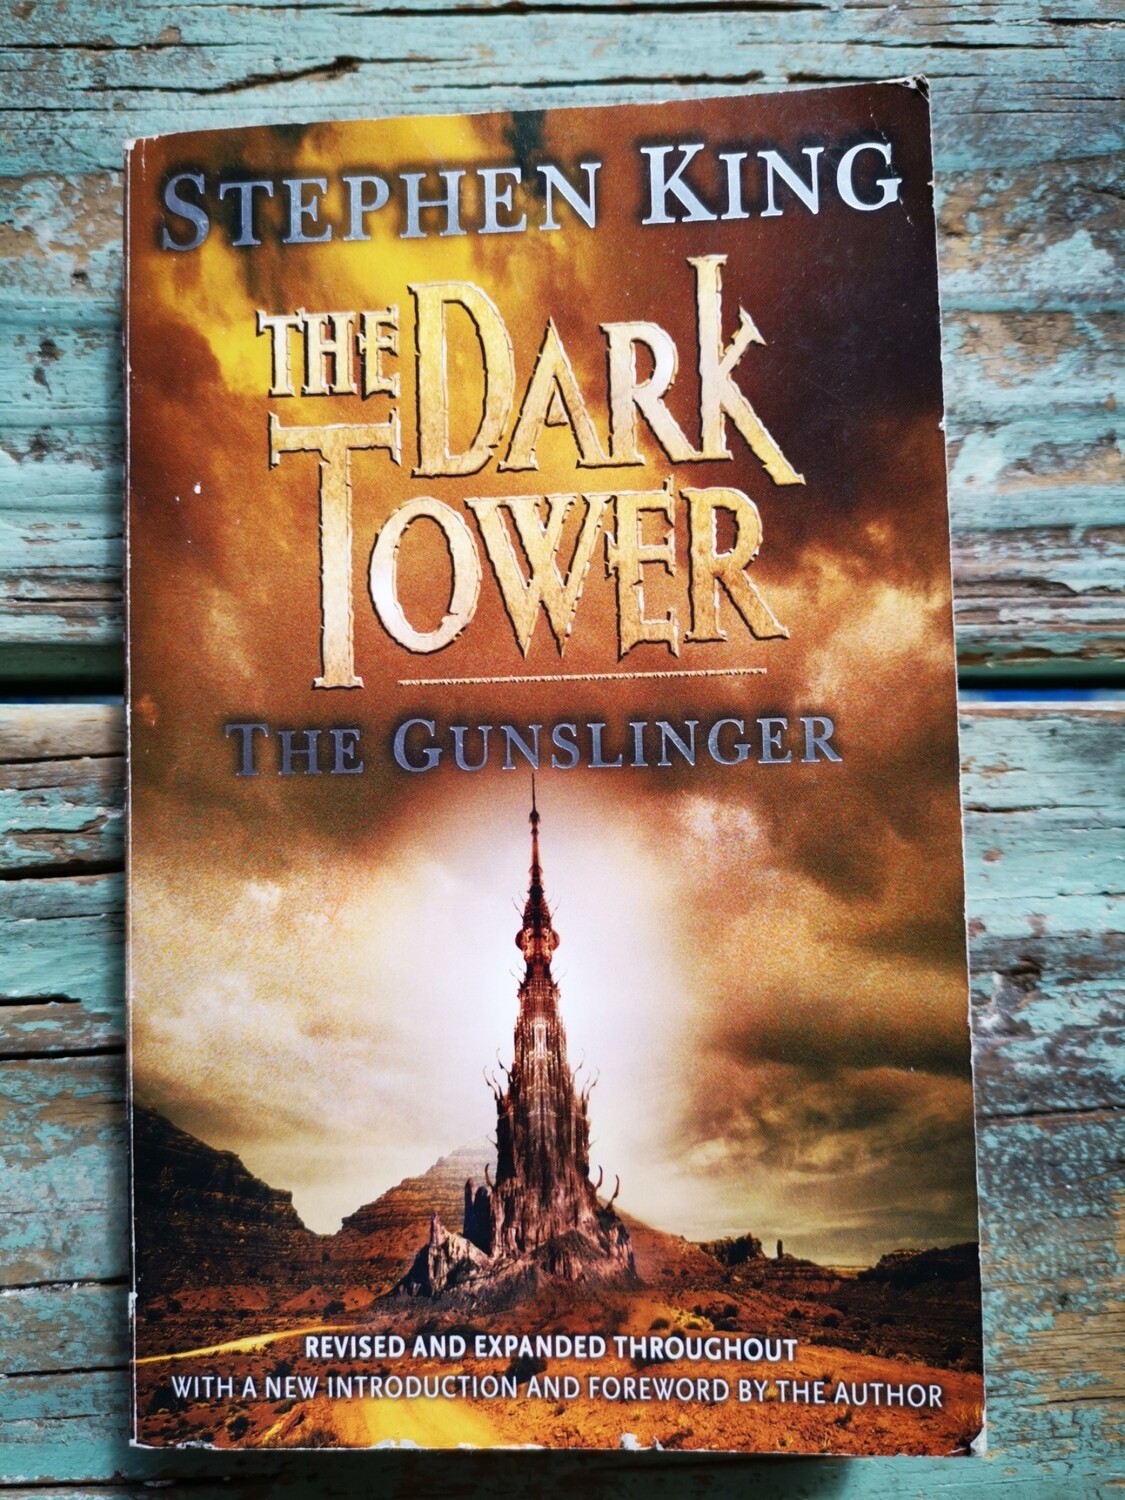 The dark tower the Gunslinger, Stephen King